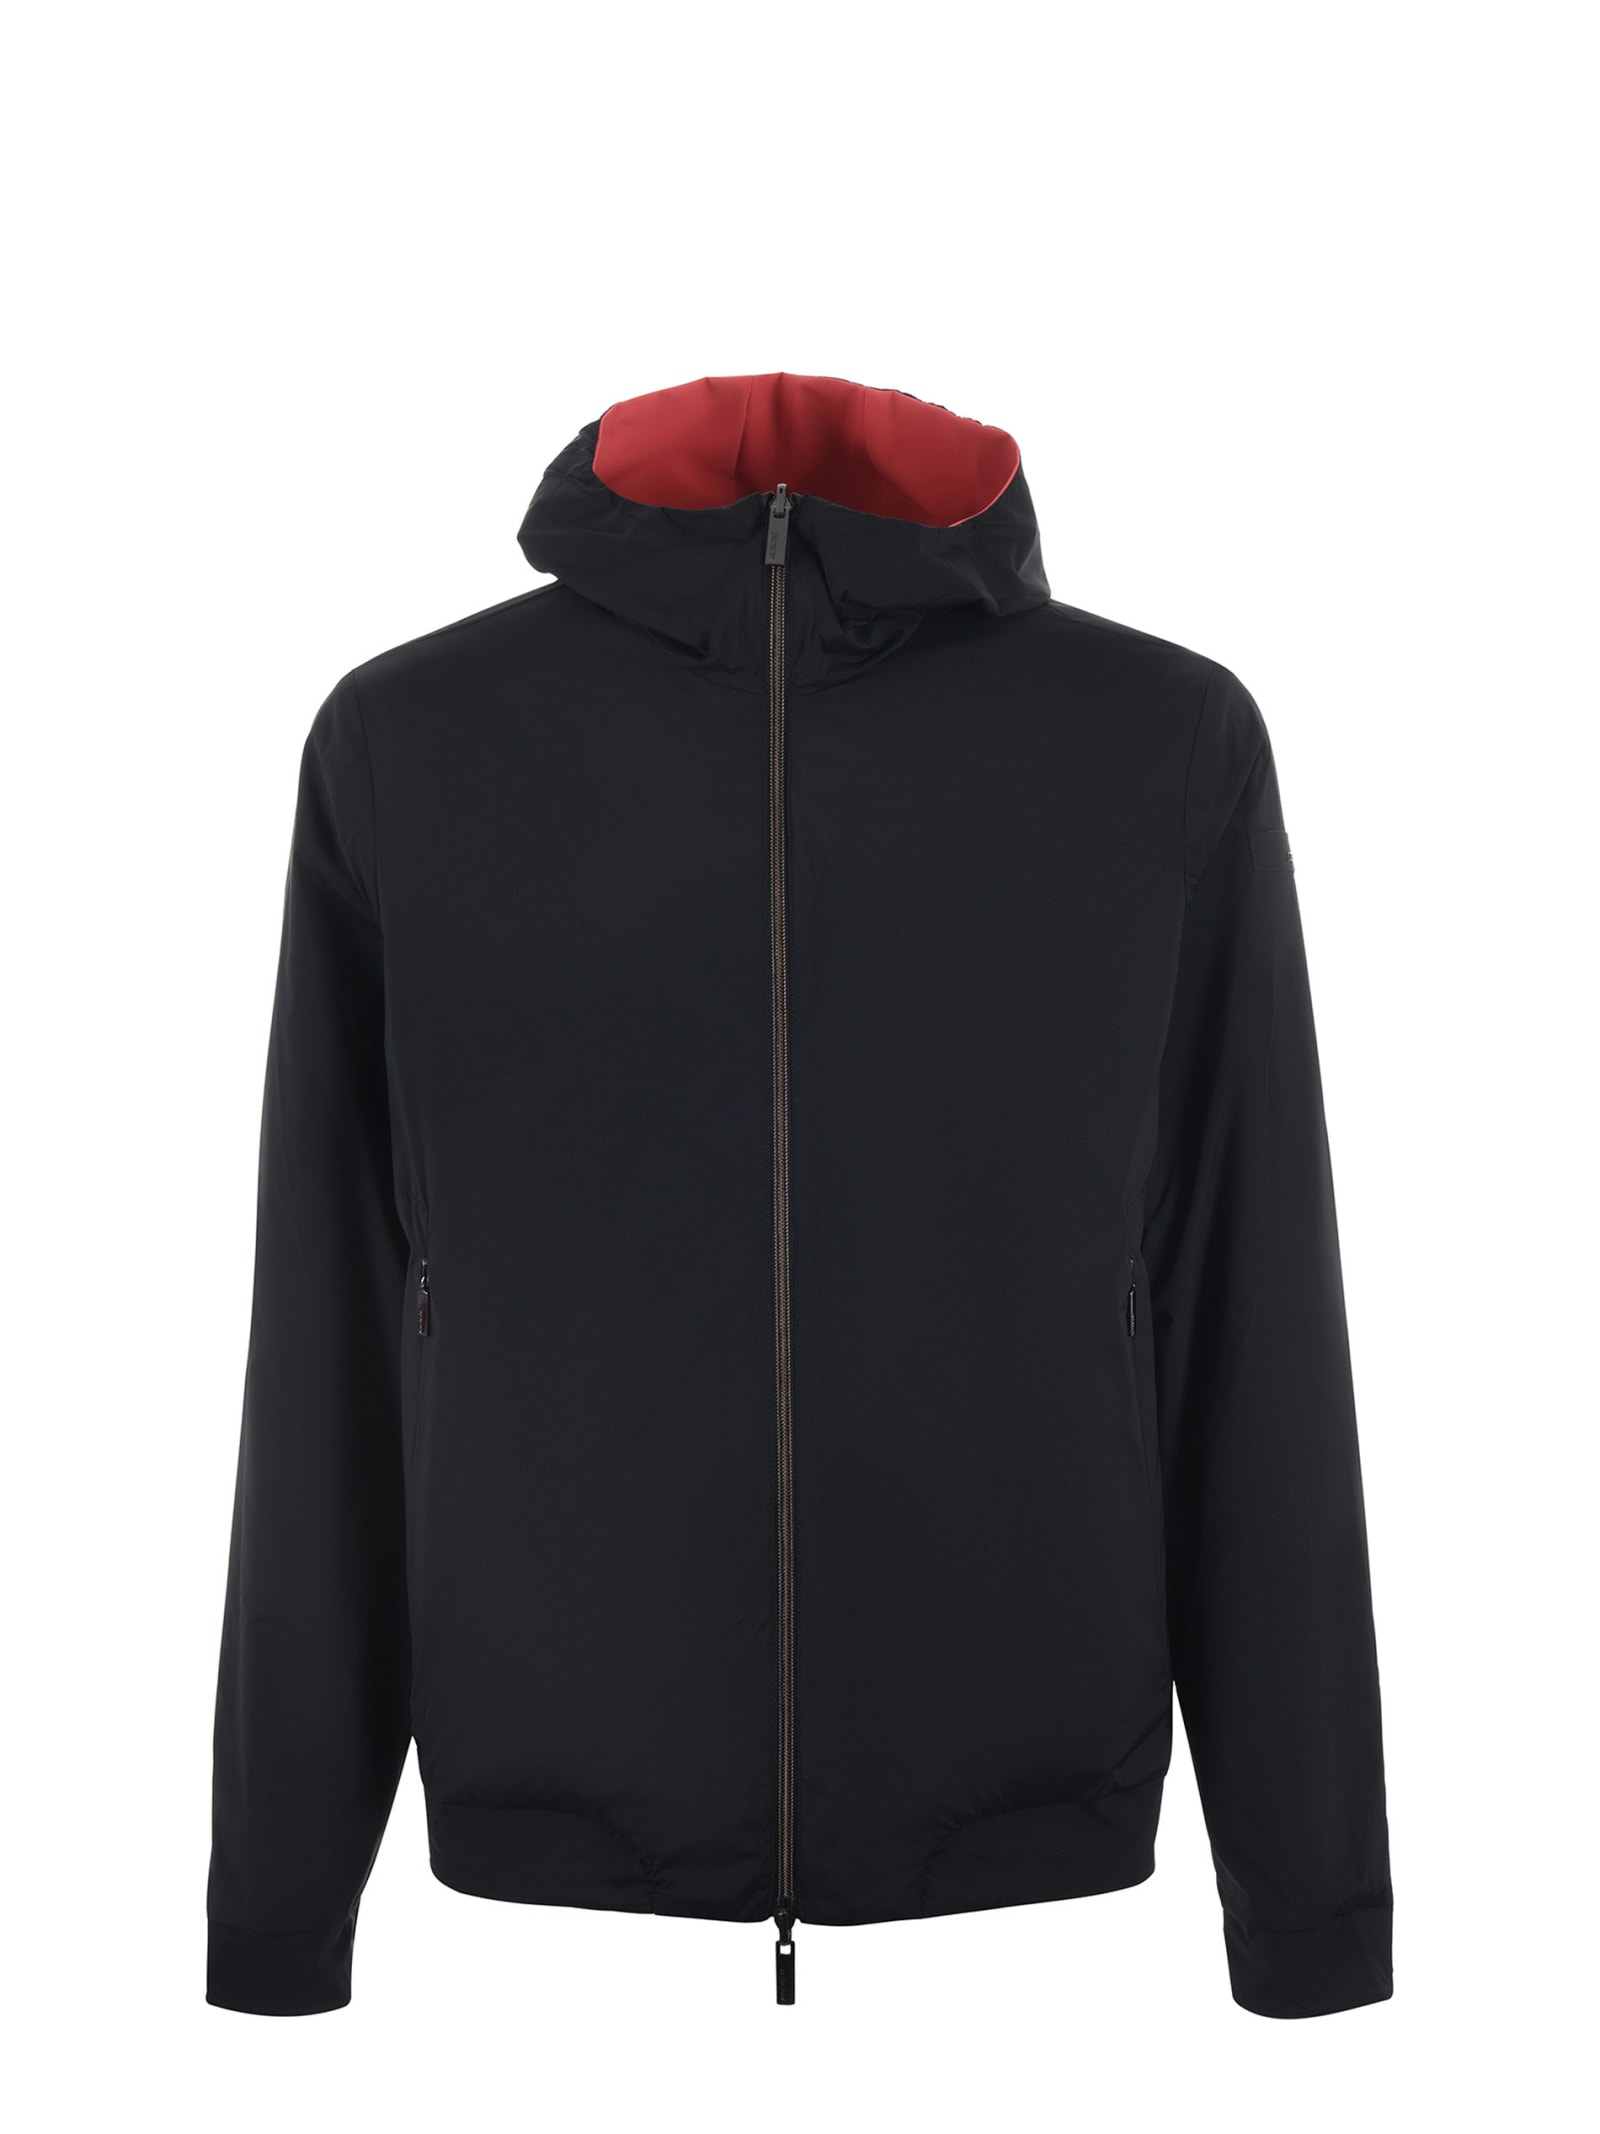 Shop Rrd - Roberto Ricci Design Reversible Rrd Jacket In Corallo/nero